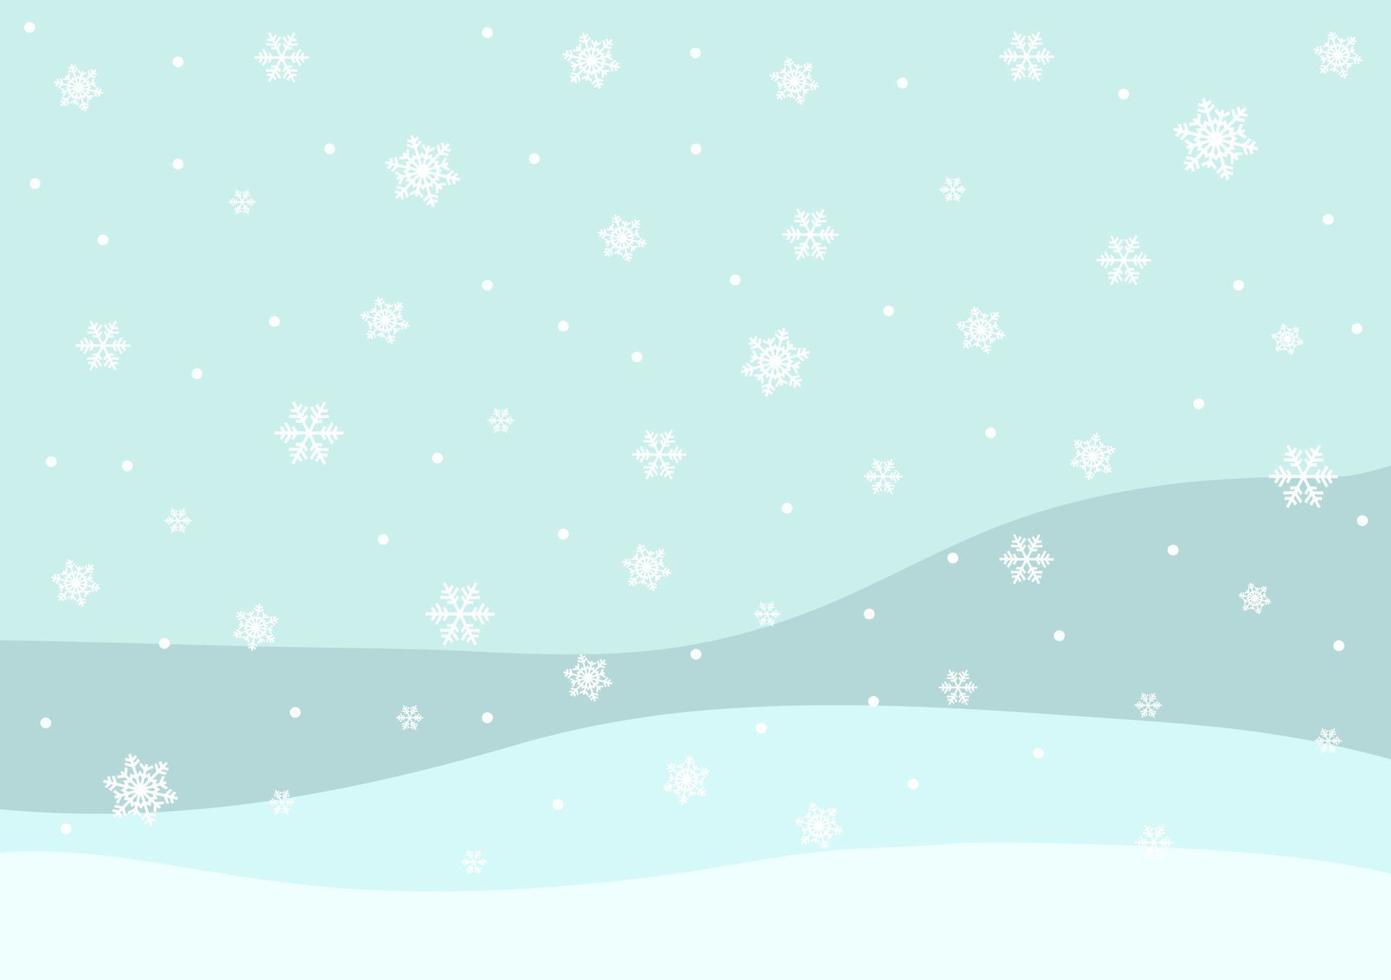 vakantie groet met sneeuwvlok achtergrond.kerstmis achtergrond. vector